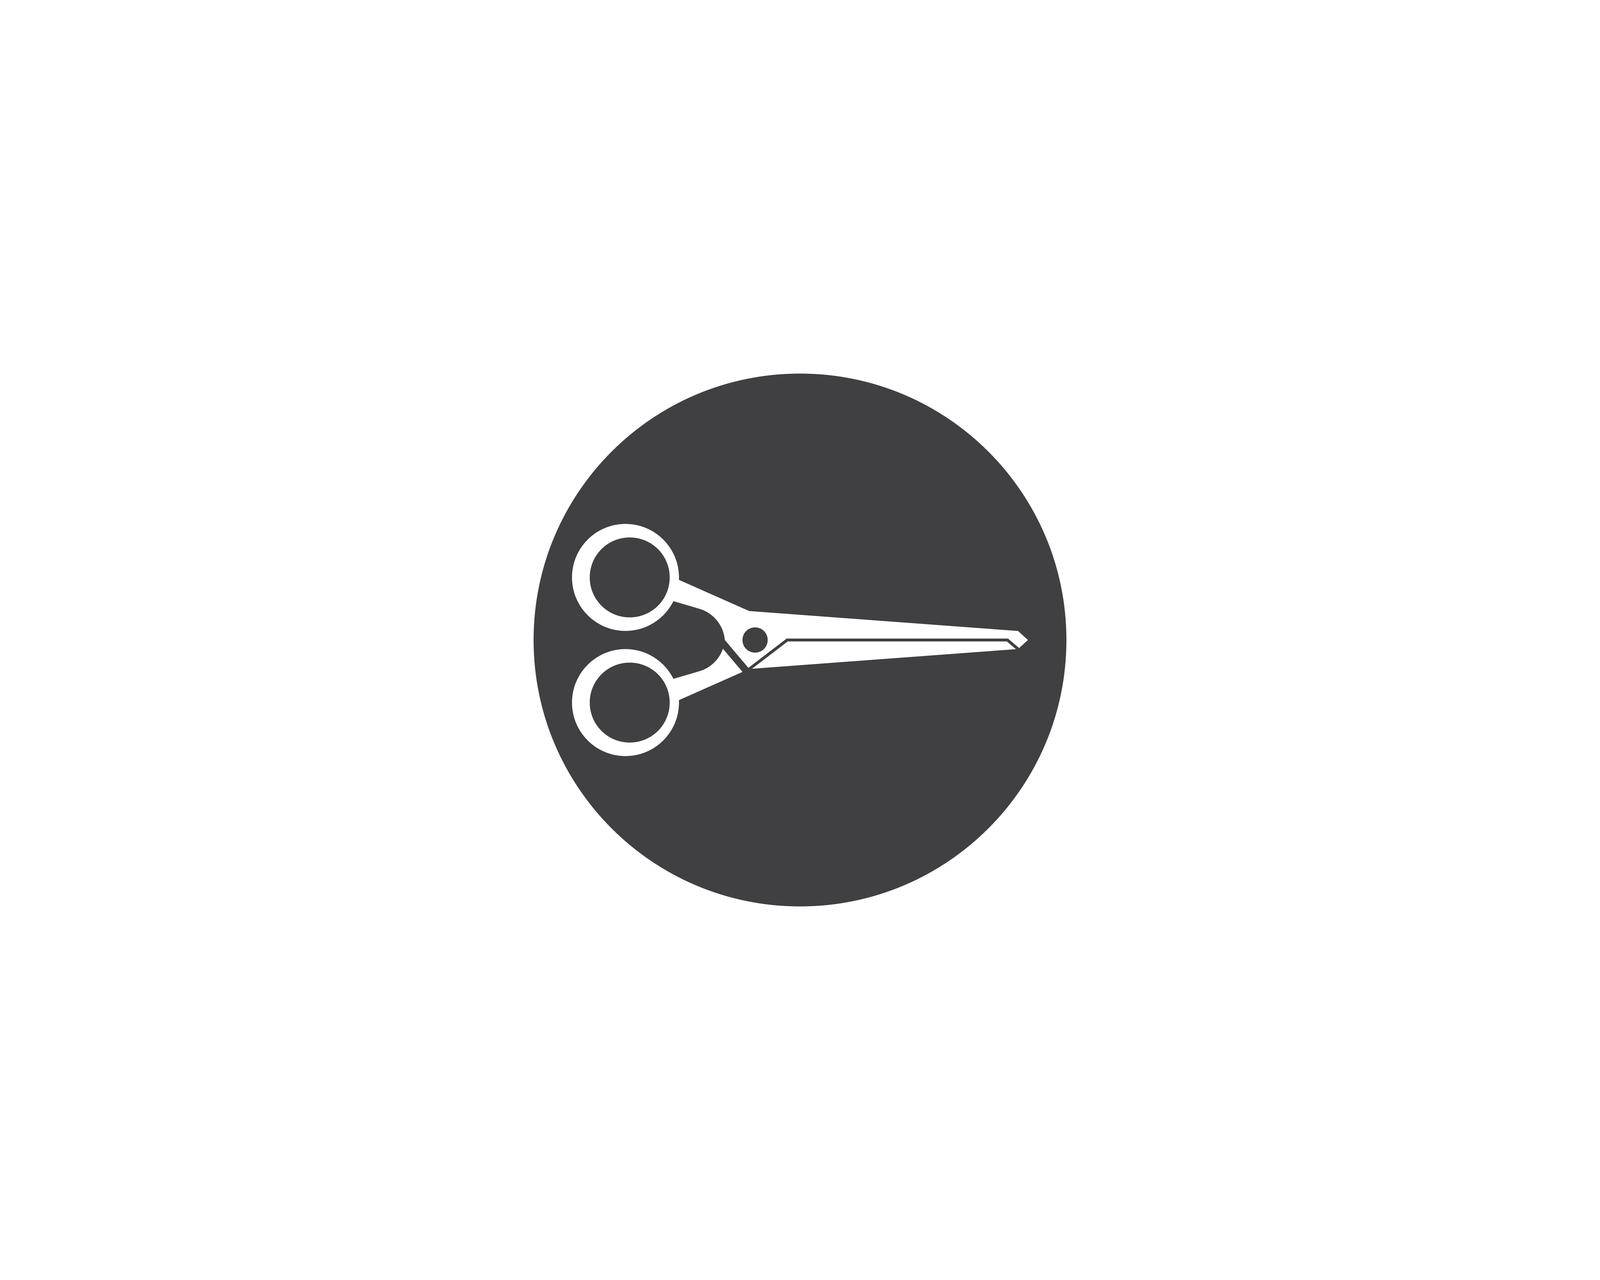 Scissors images  illustration design